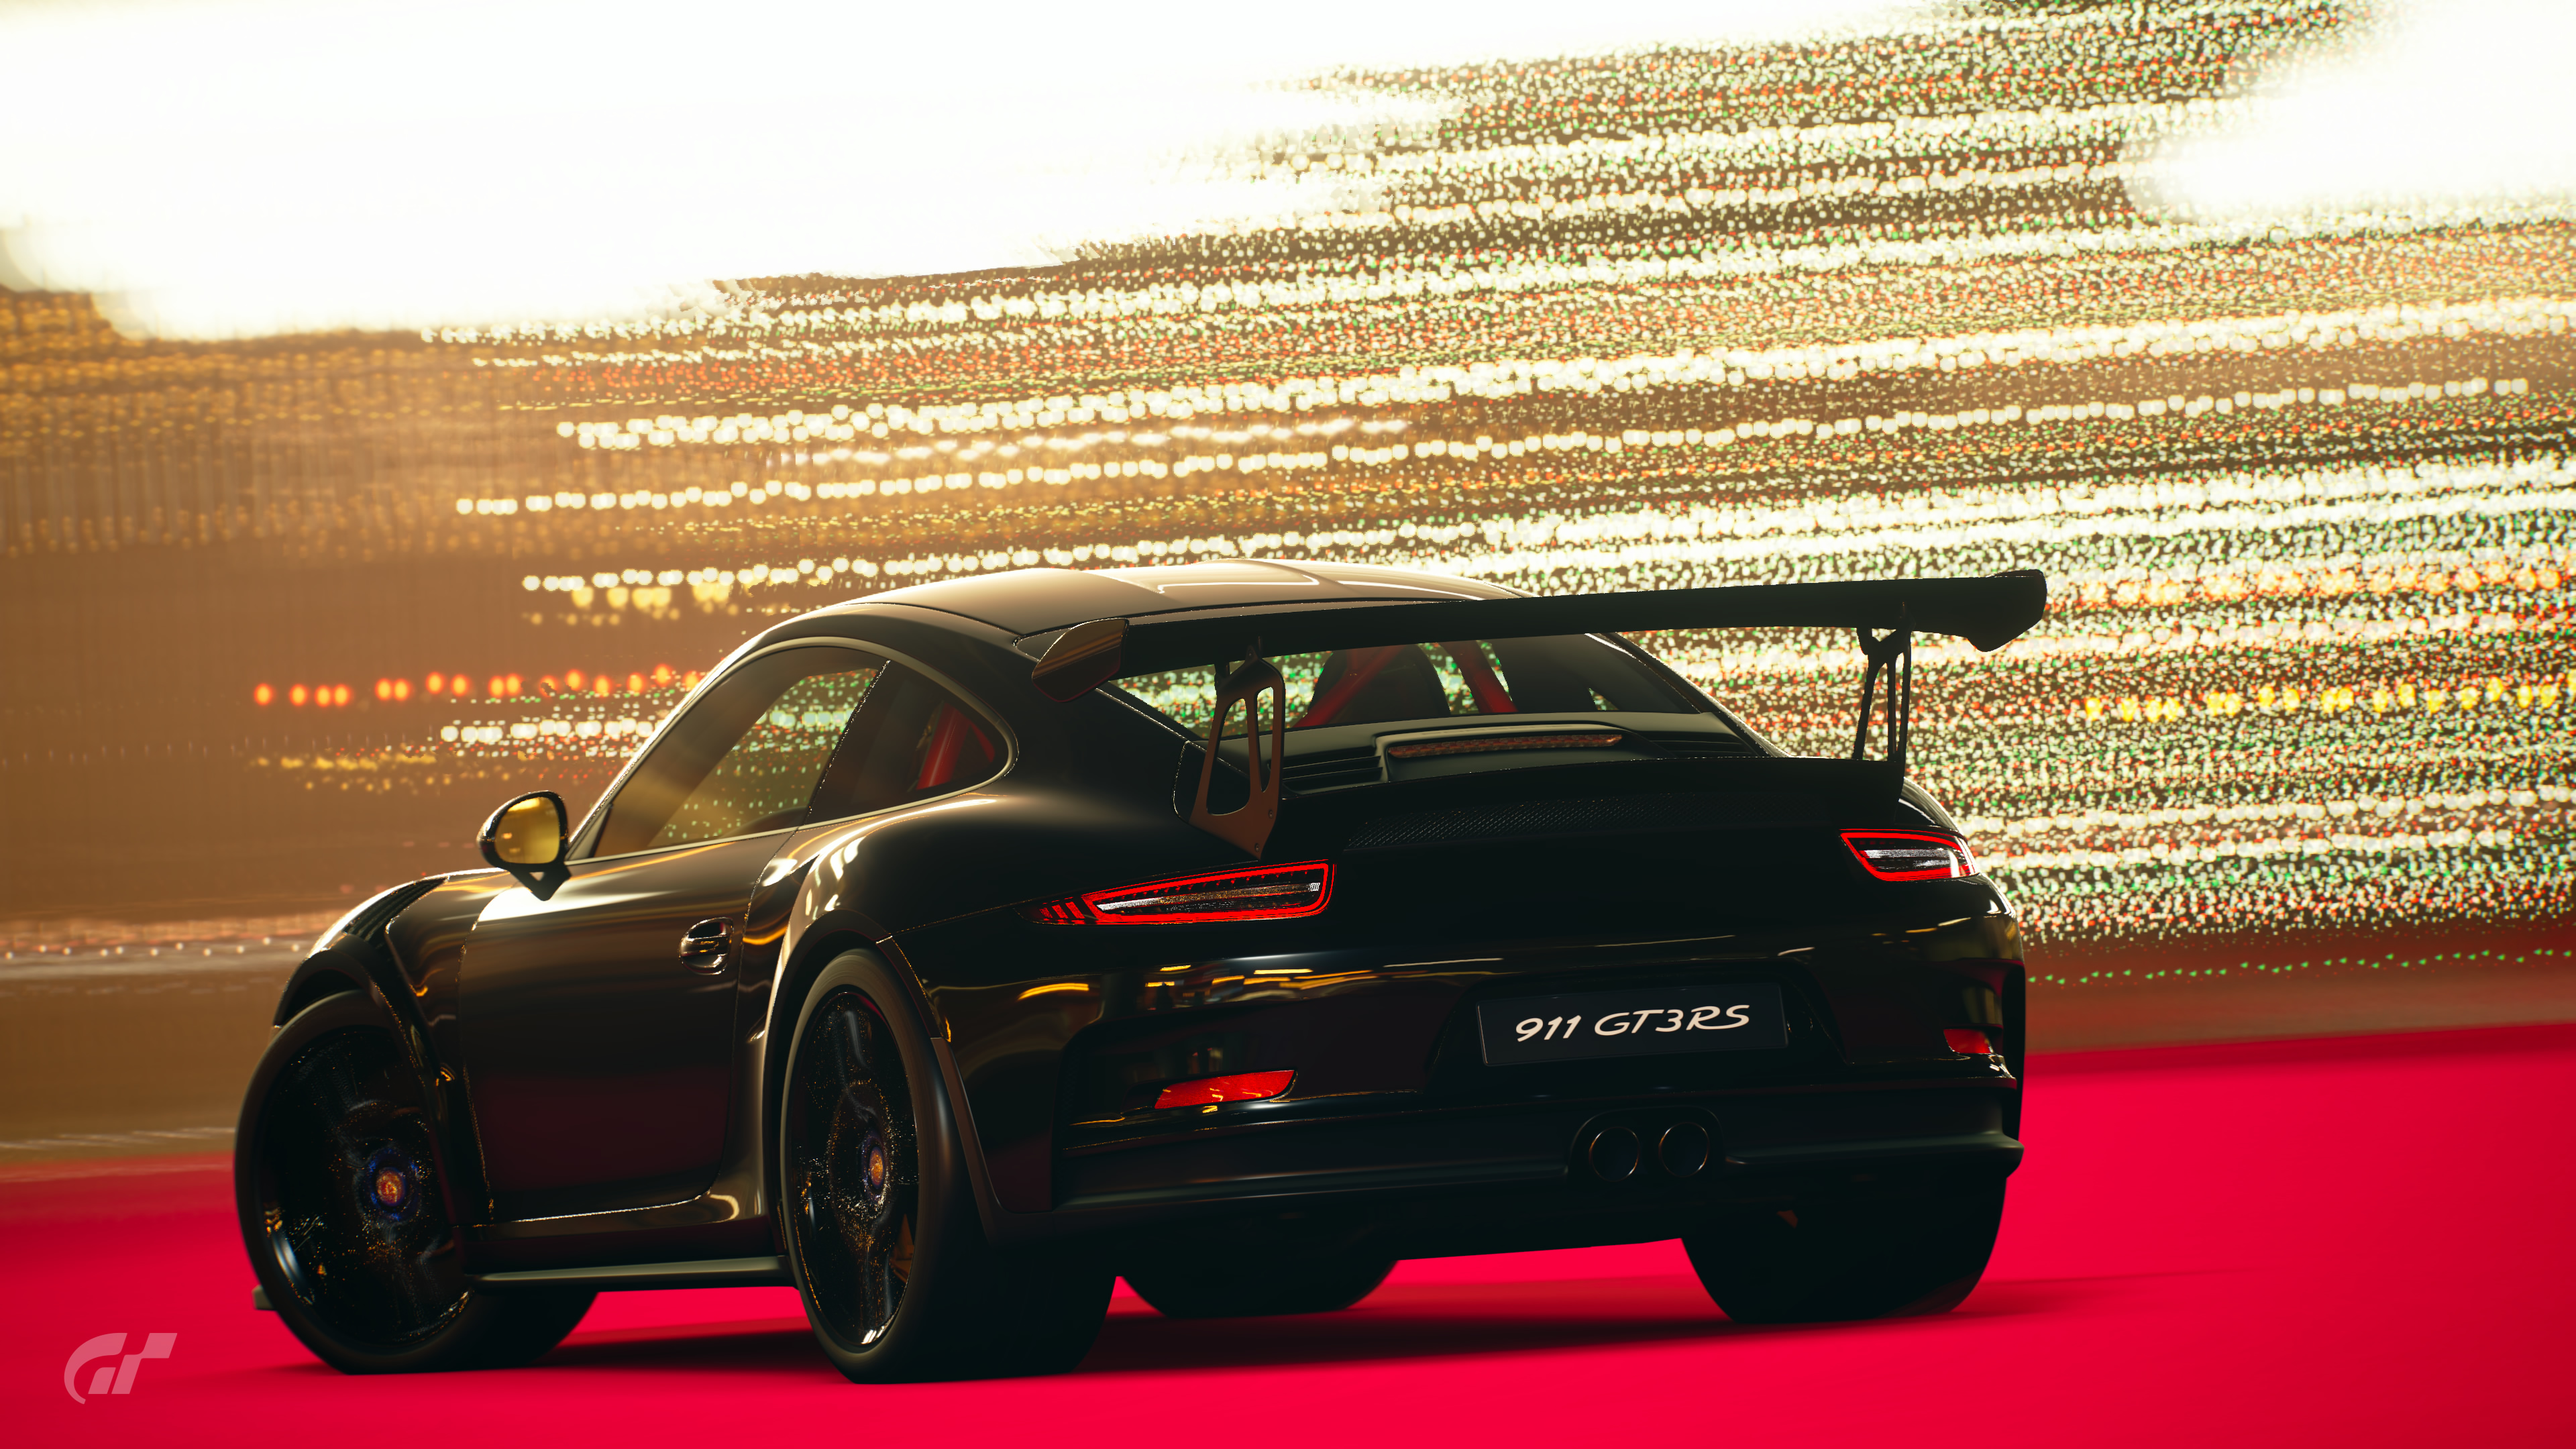 Porsche Gt3 Rs 2019 - HD Wallpaper 